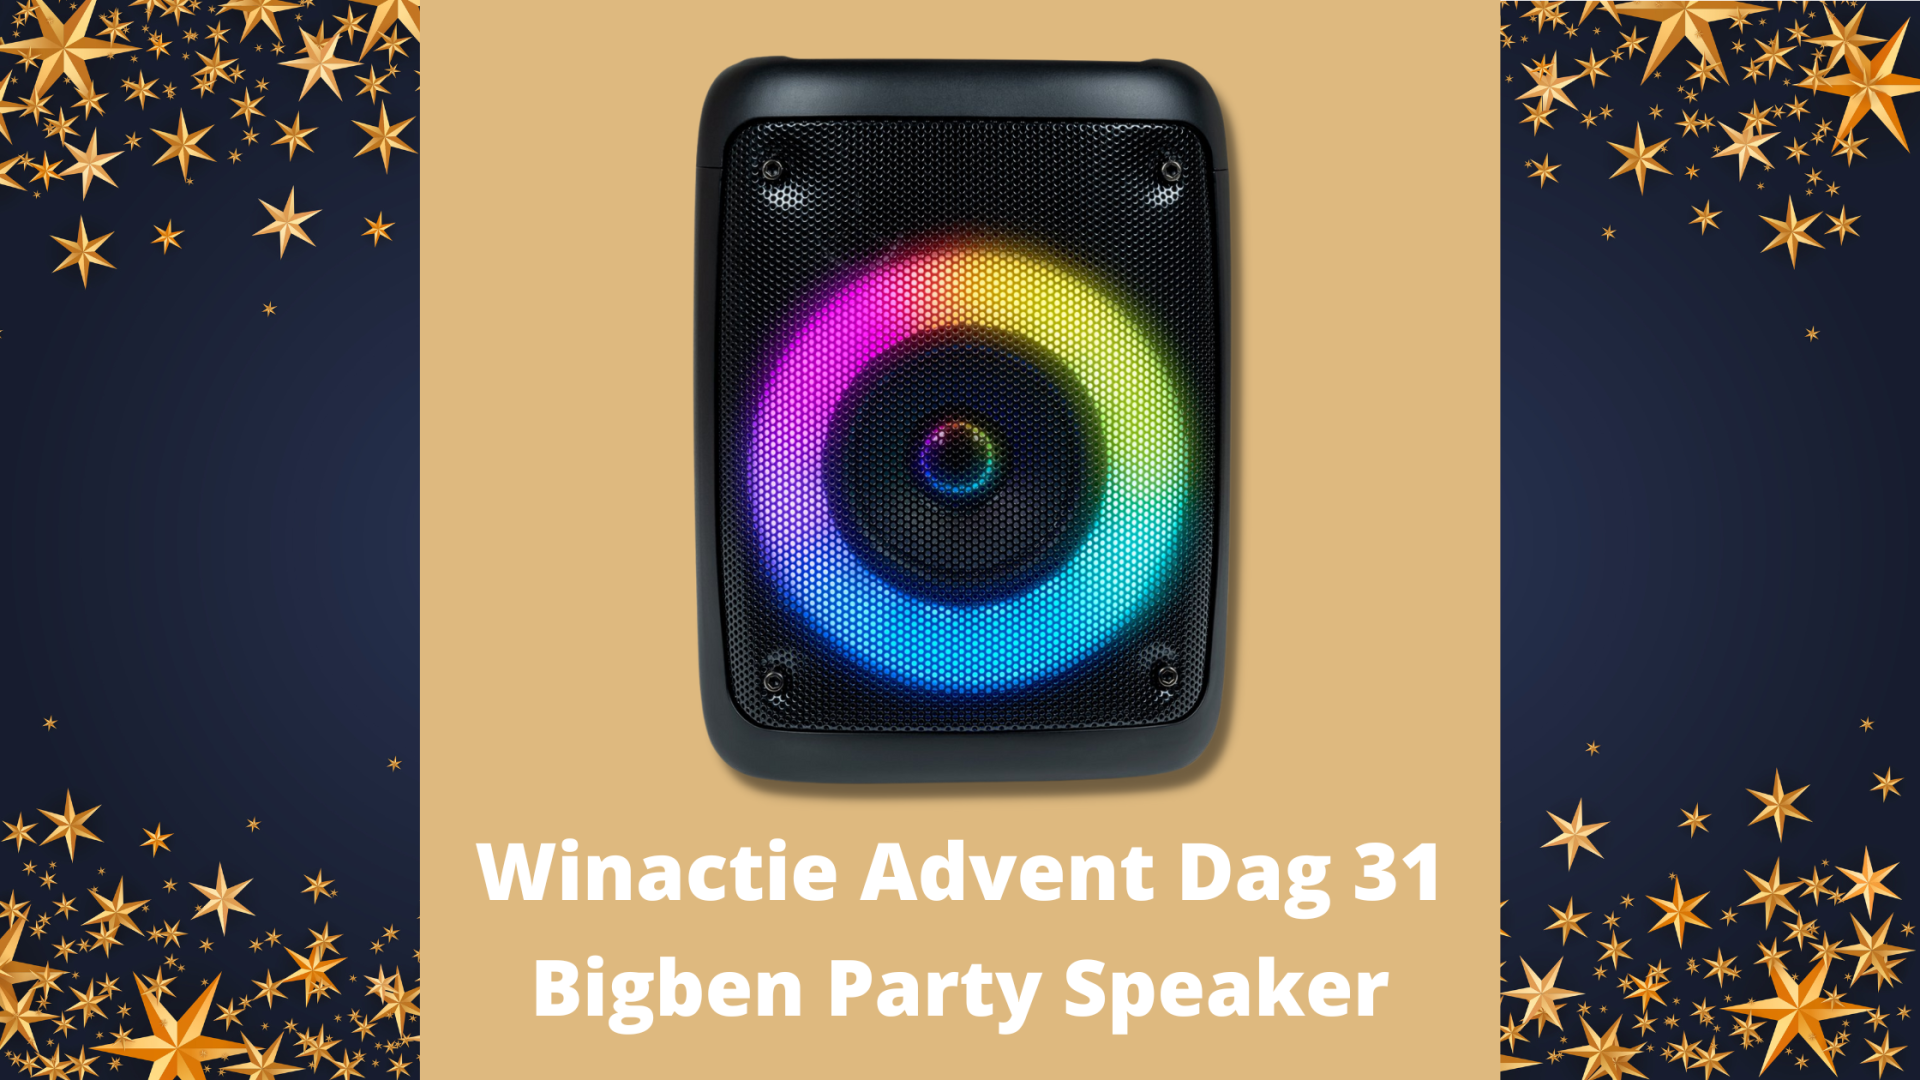 Winactie Advent Dag 31 Bigben Party Speaker